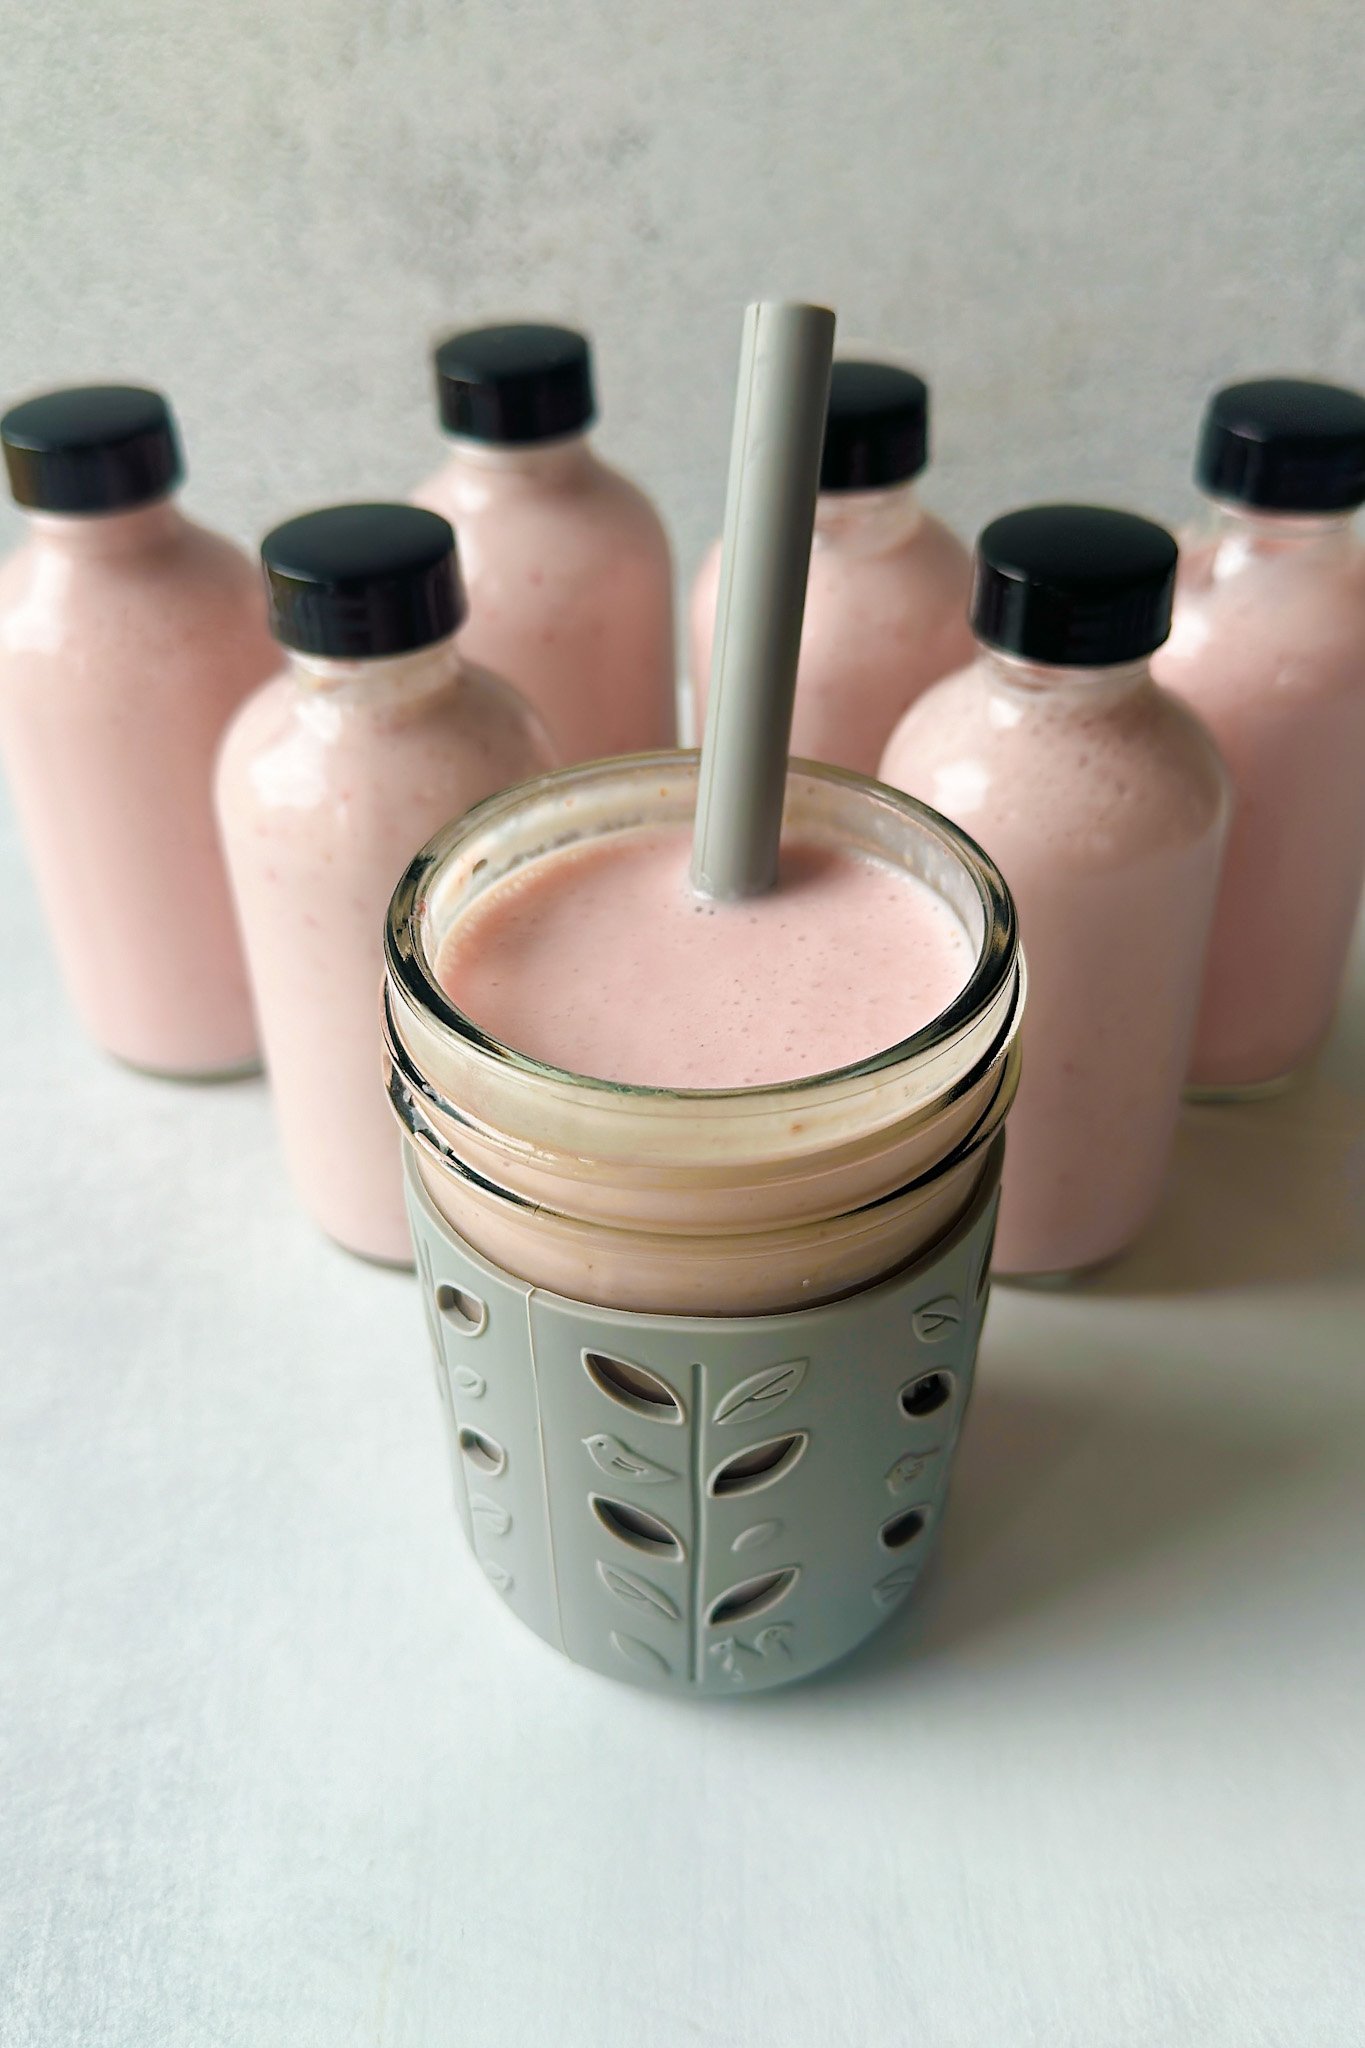 Homemade strawberry yogurt drinks shown in mini glass jars.